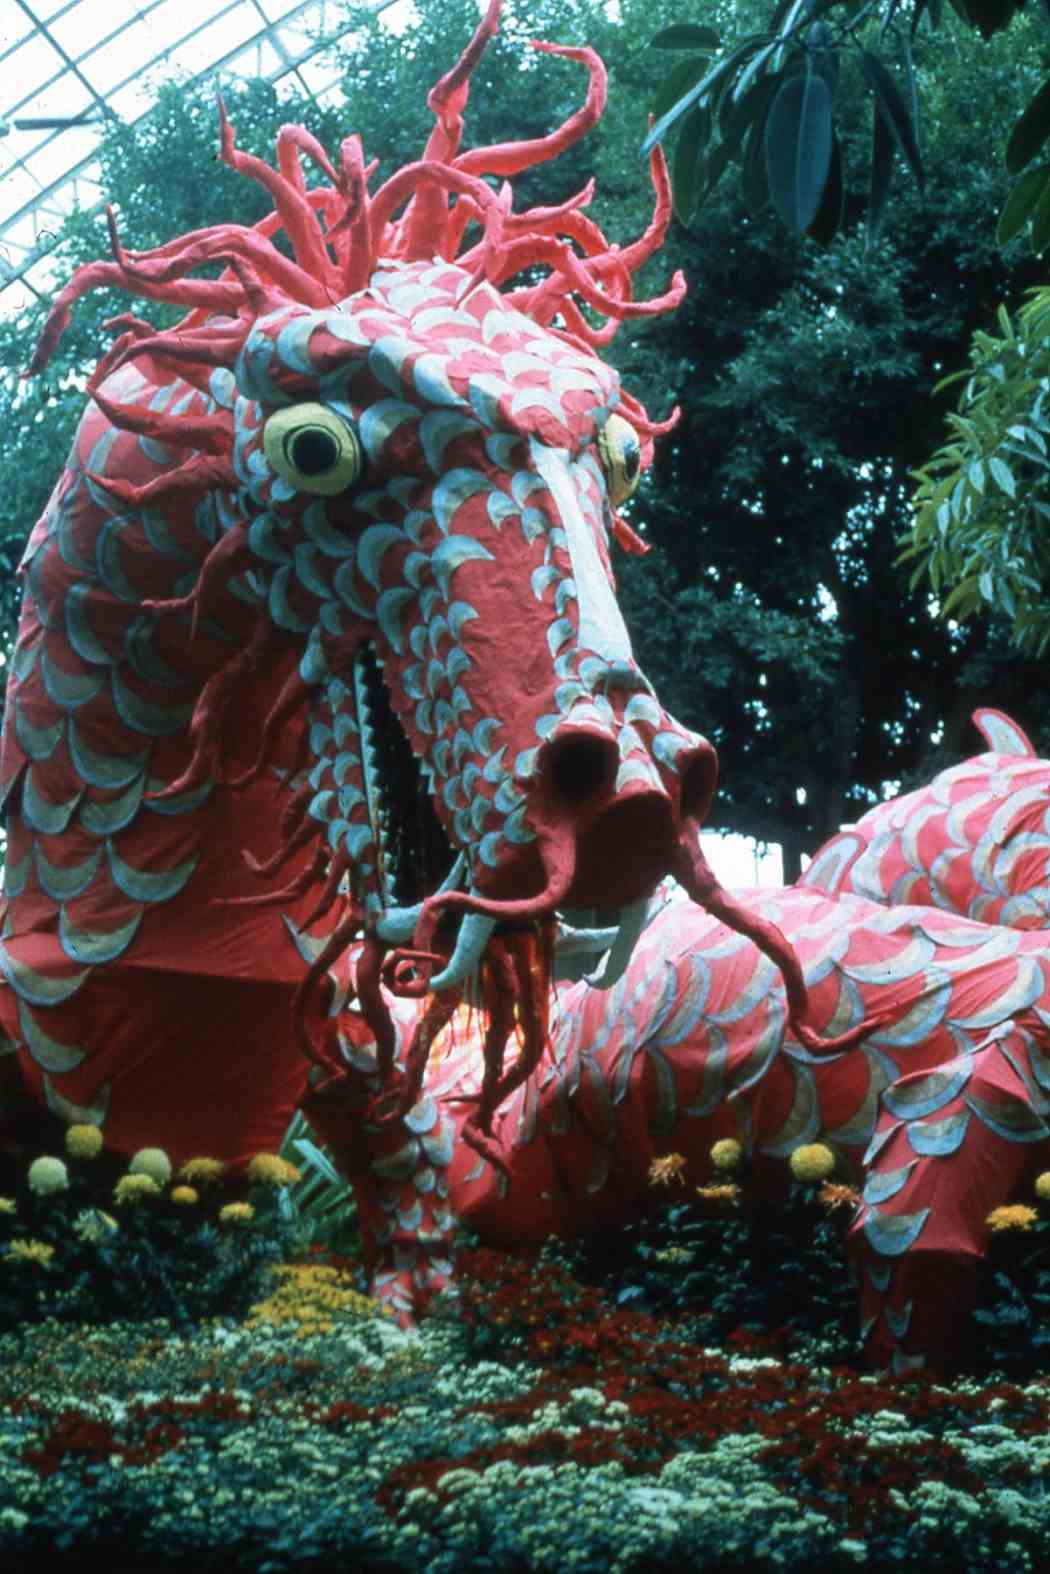 Fall Flower Show 1986: China — Origin of the Chrysanthemum